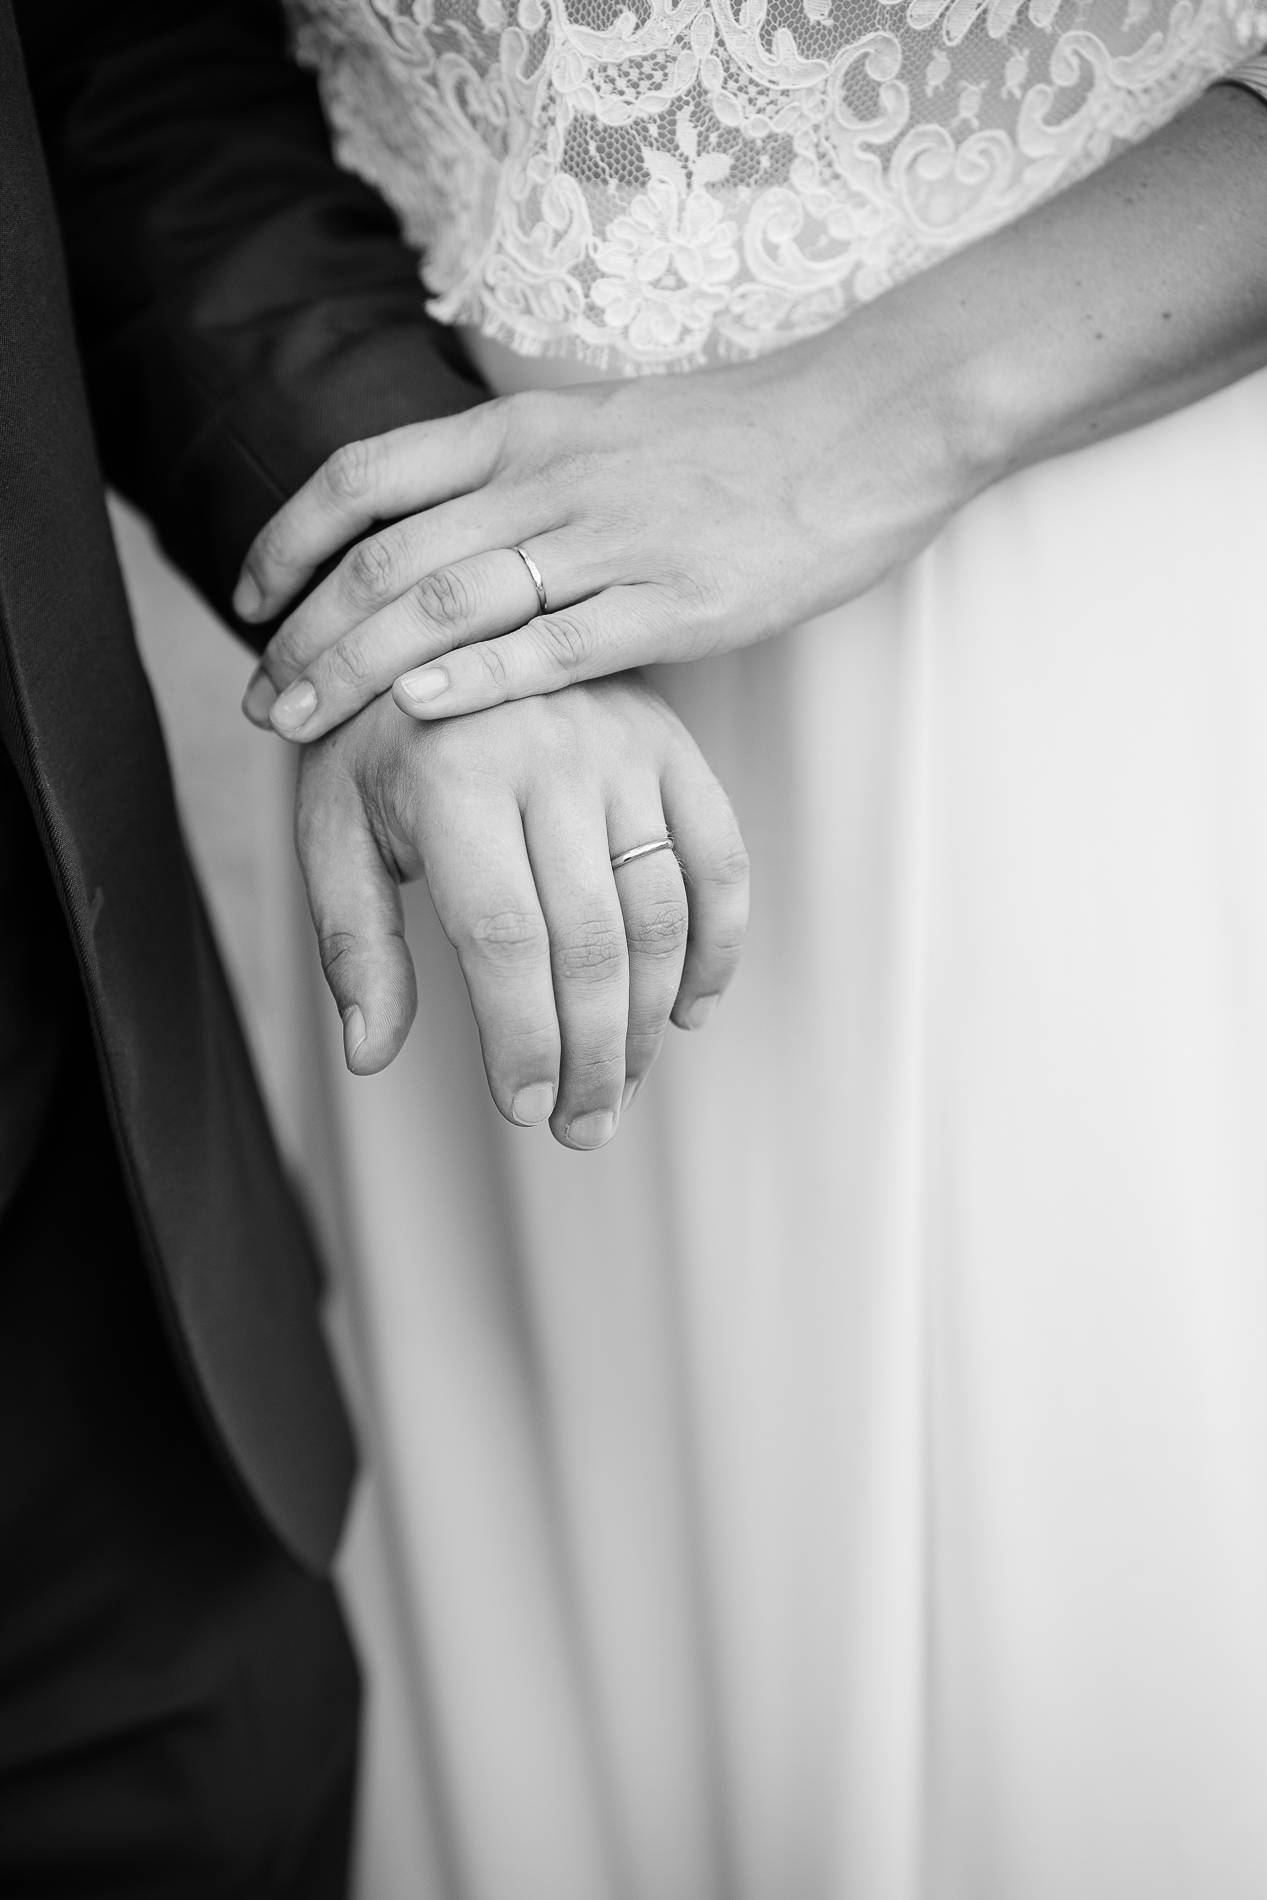 reportage mariage - photo details noir et blanc - amelie labarthe photography